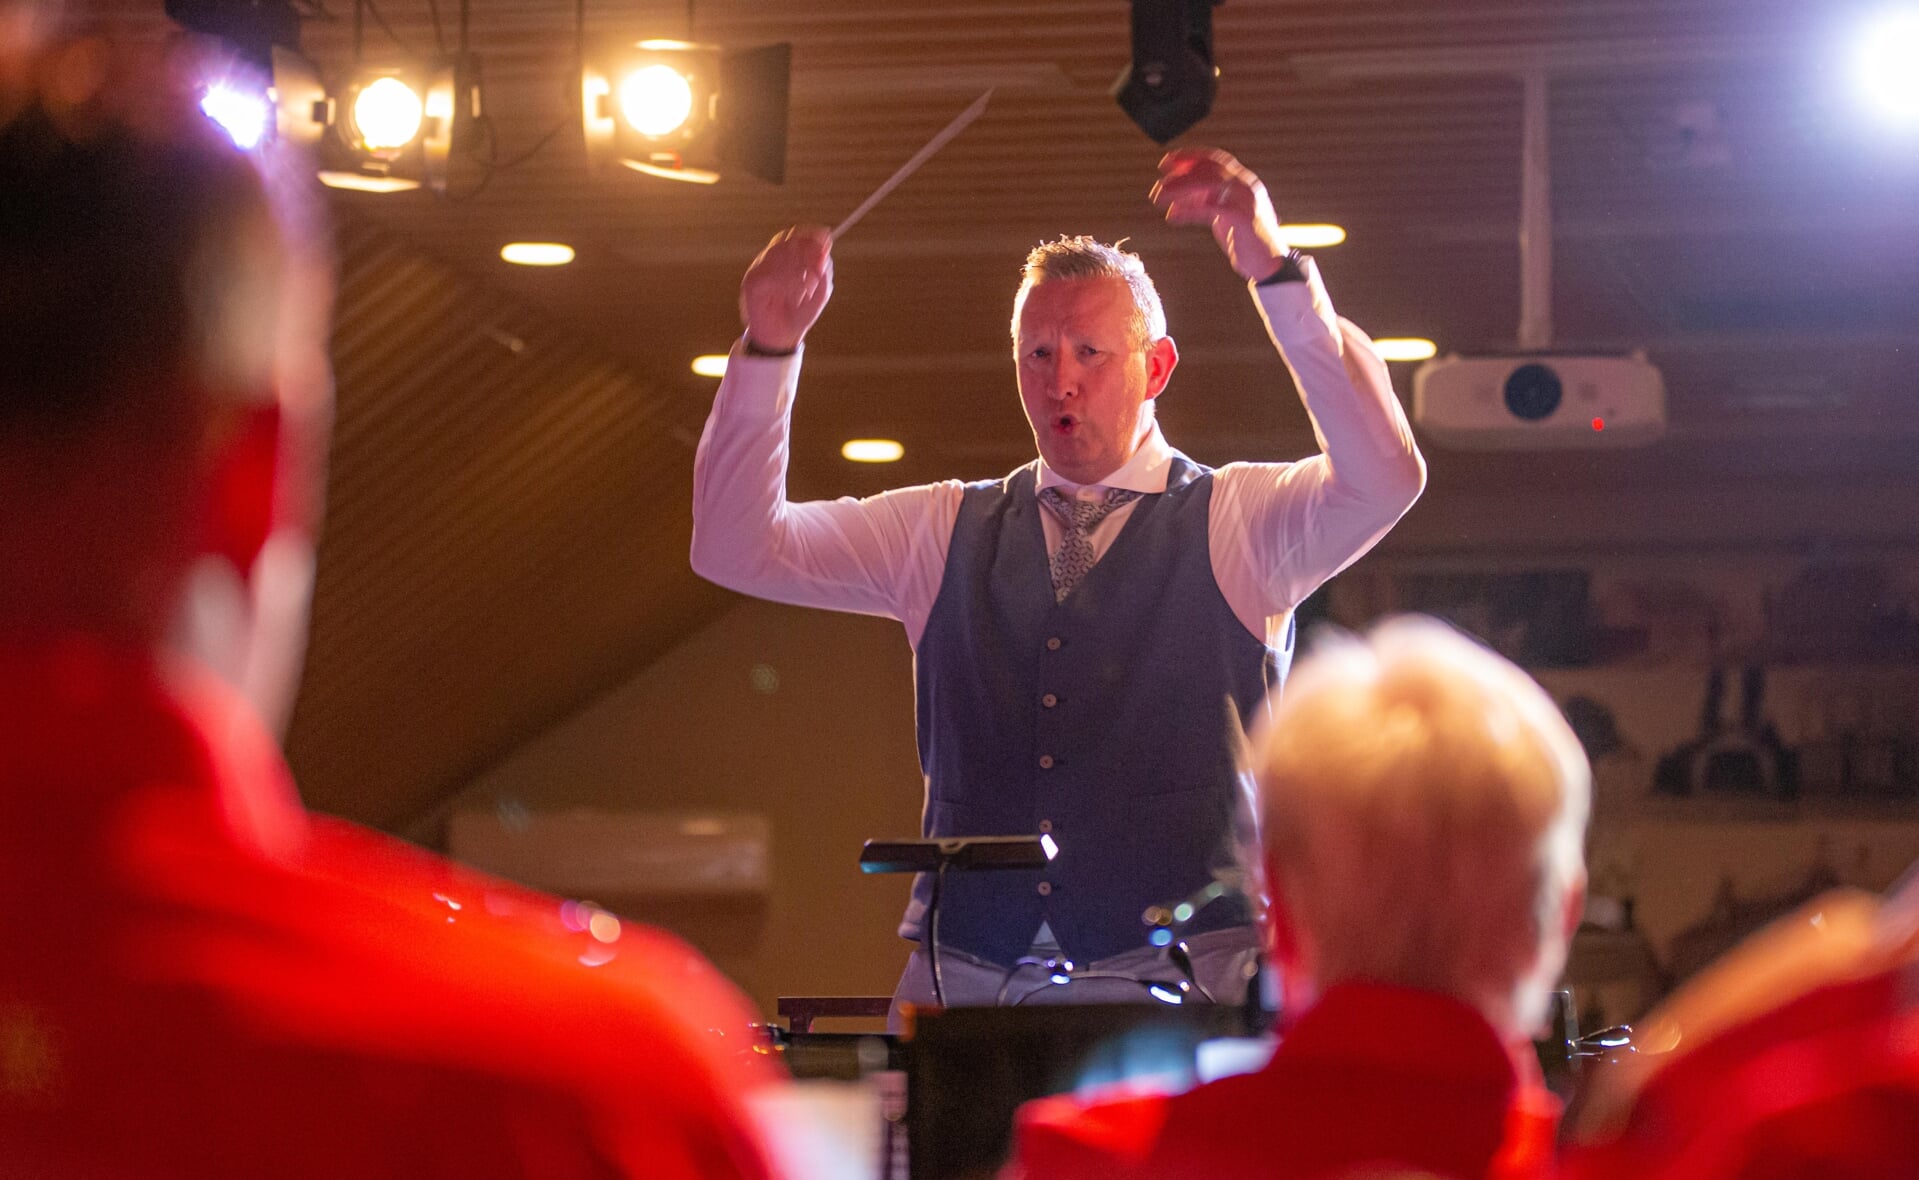 Arie van der Weide is de nieuwe maestro van Esch. Hij won zaterdagavond de dirigeerwedstrijd die muziekvereniging Sint-Willibrordus organiseerde in dorpshuis De Es. Naast de gouden baton, mocht hij zijn nummer Thank you for the Music van Abba nog een keer opvoeren met het orkest.